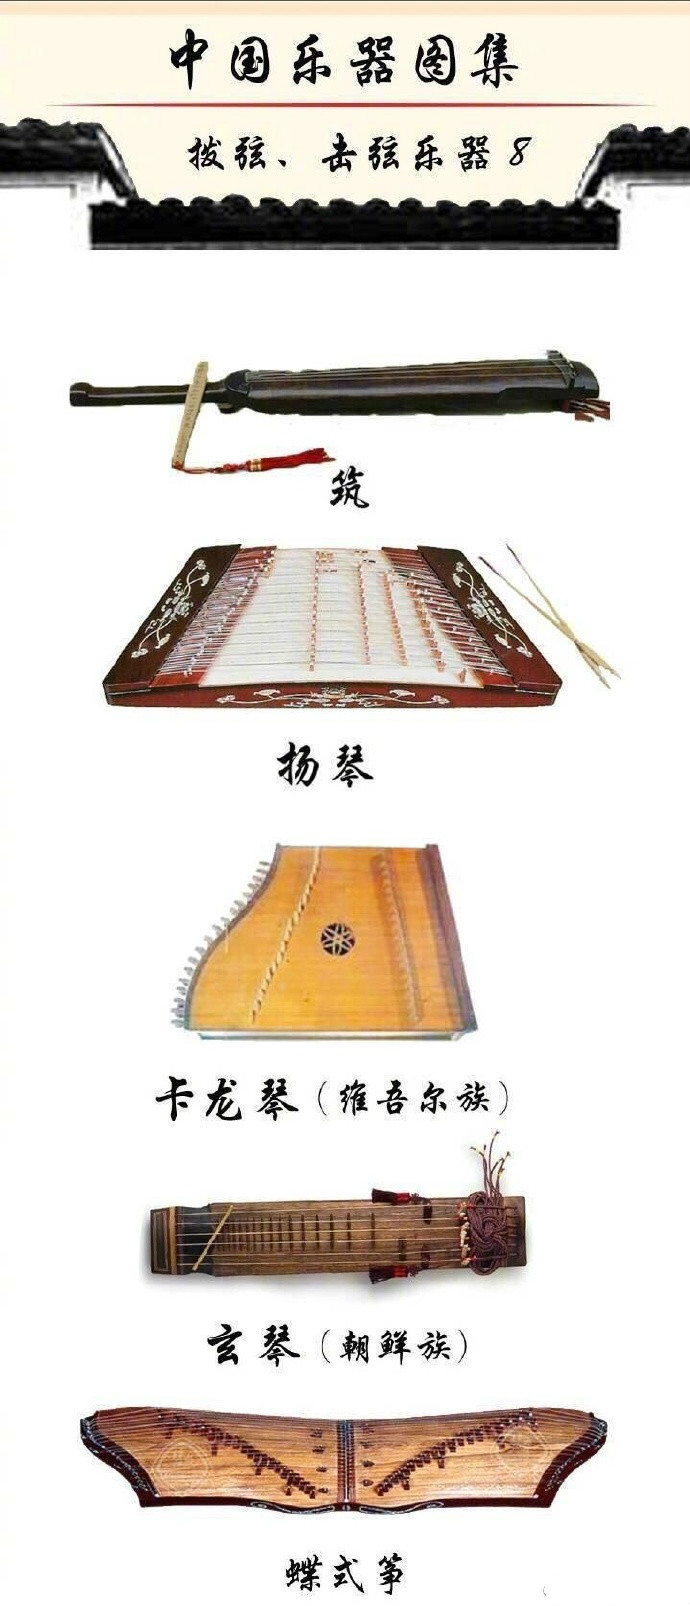 中国乐器图集：种类繁多的乐器大全